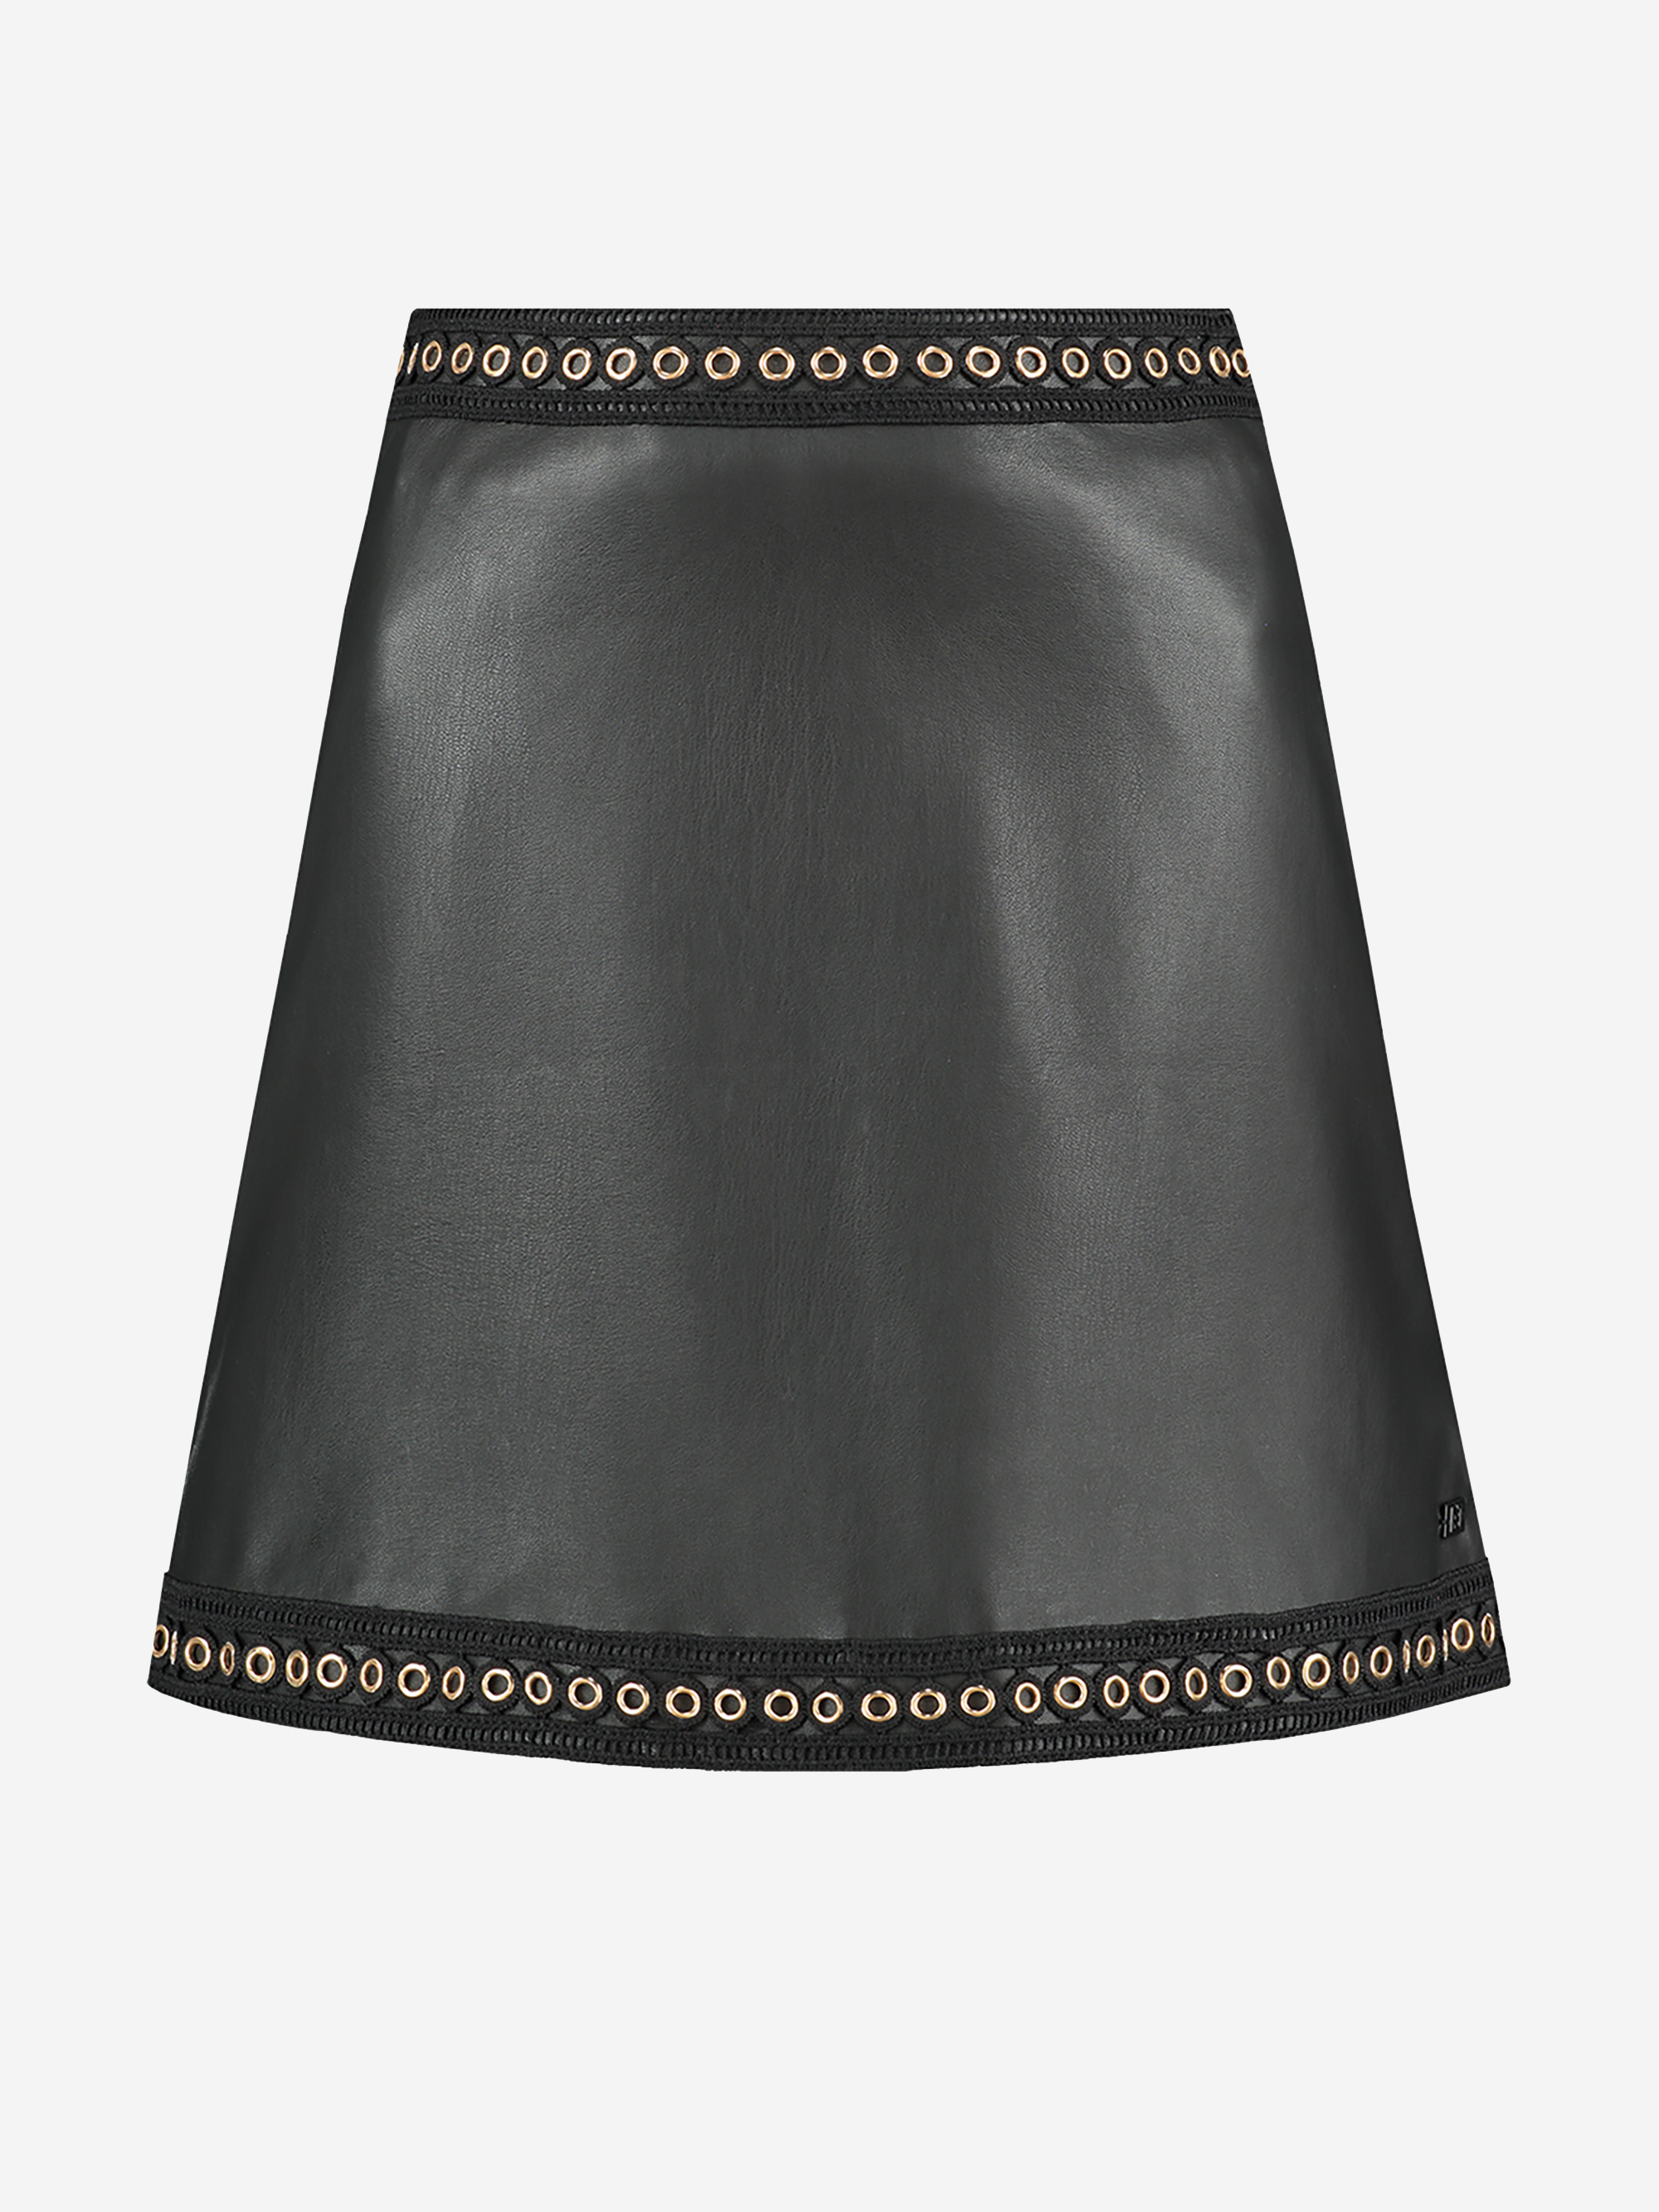 Sportique Zeewolde DAMES :: Zwarte rok met gouden Nikkie - Skirt - N3-570 1905 9000